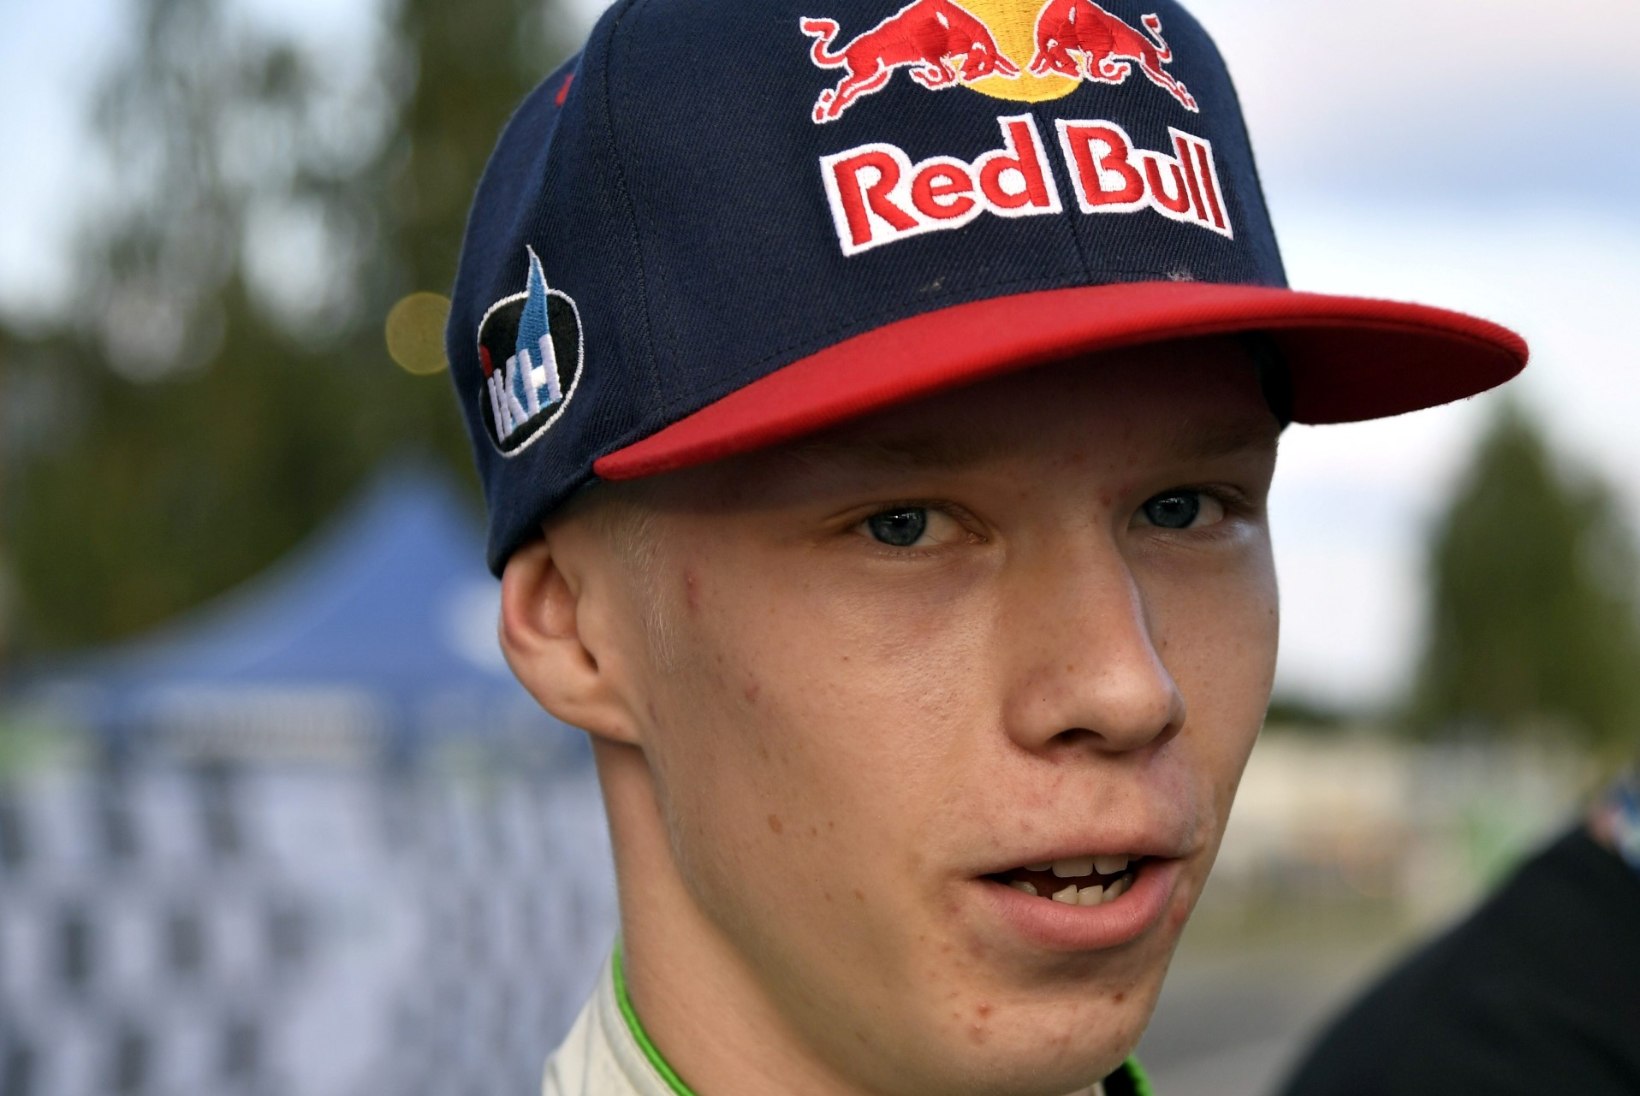 FOTOD | Noor talent Kalle Rovanperä testis esimest korda Toyotat